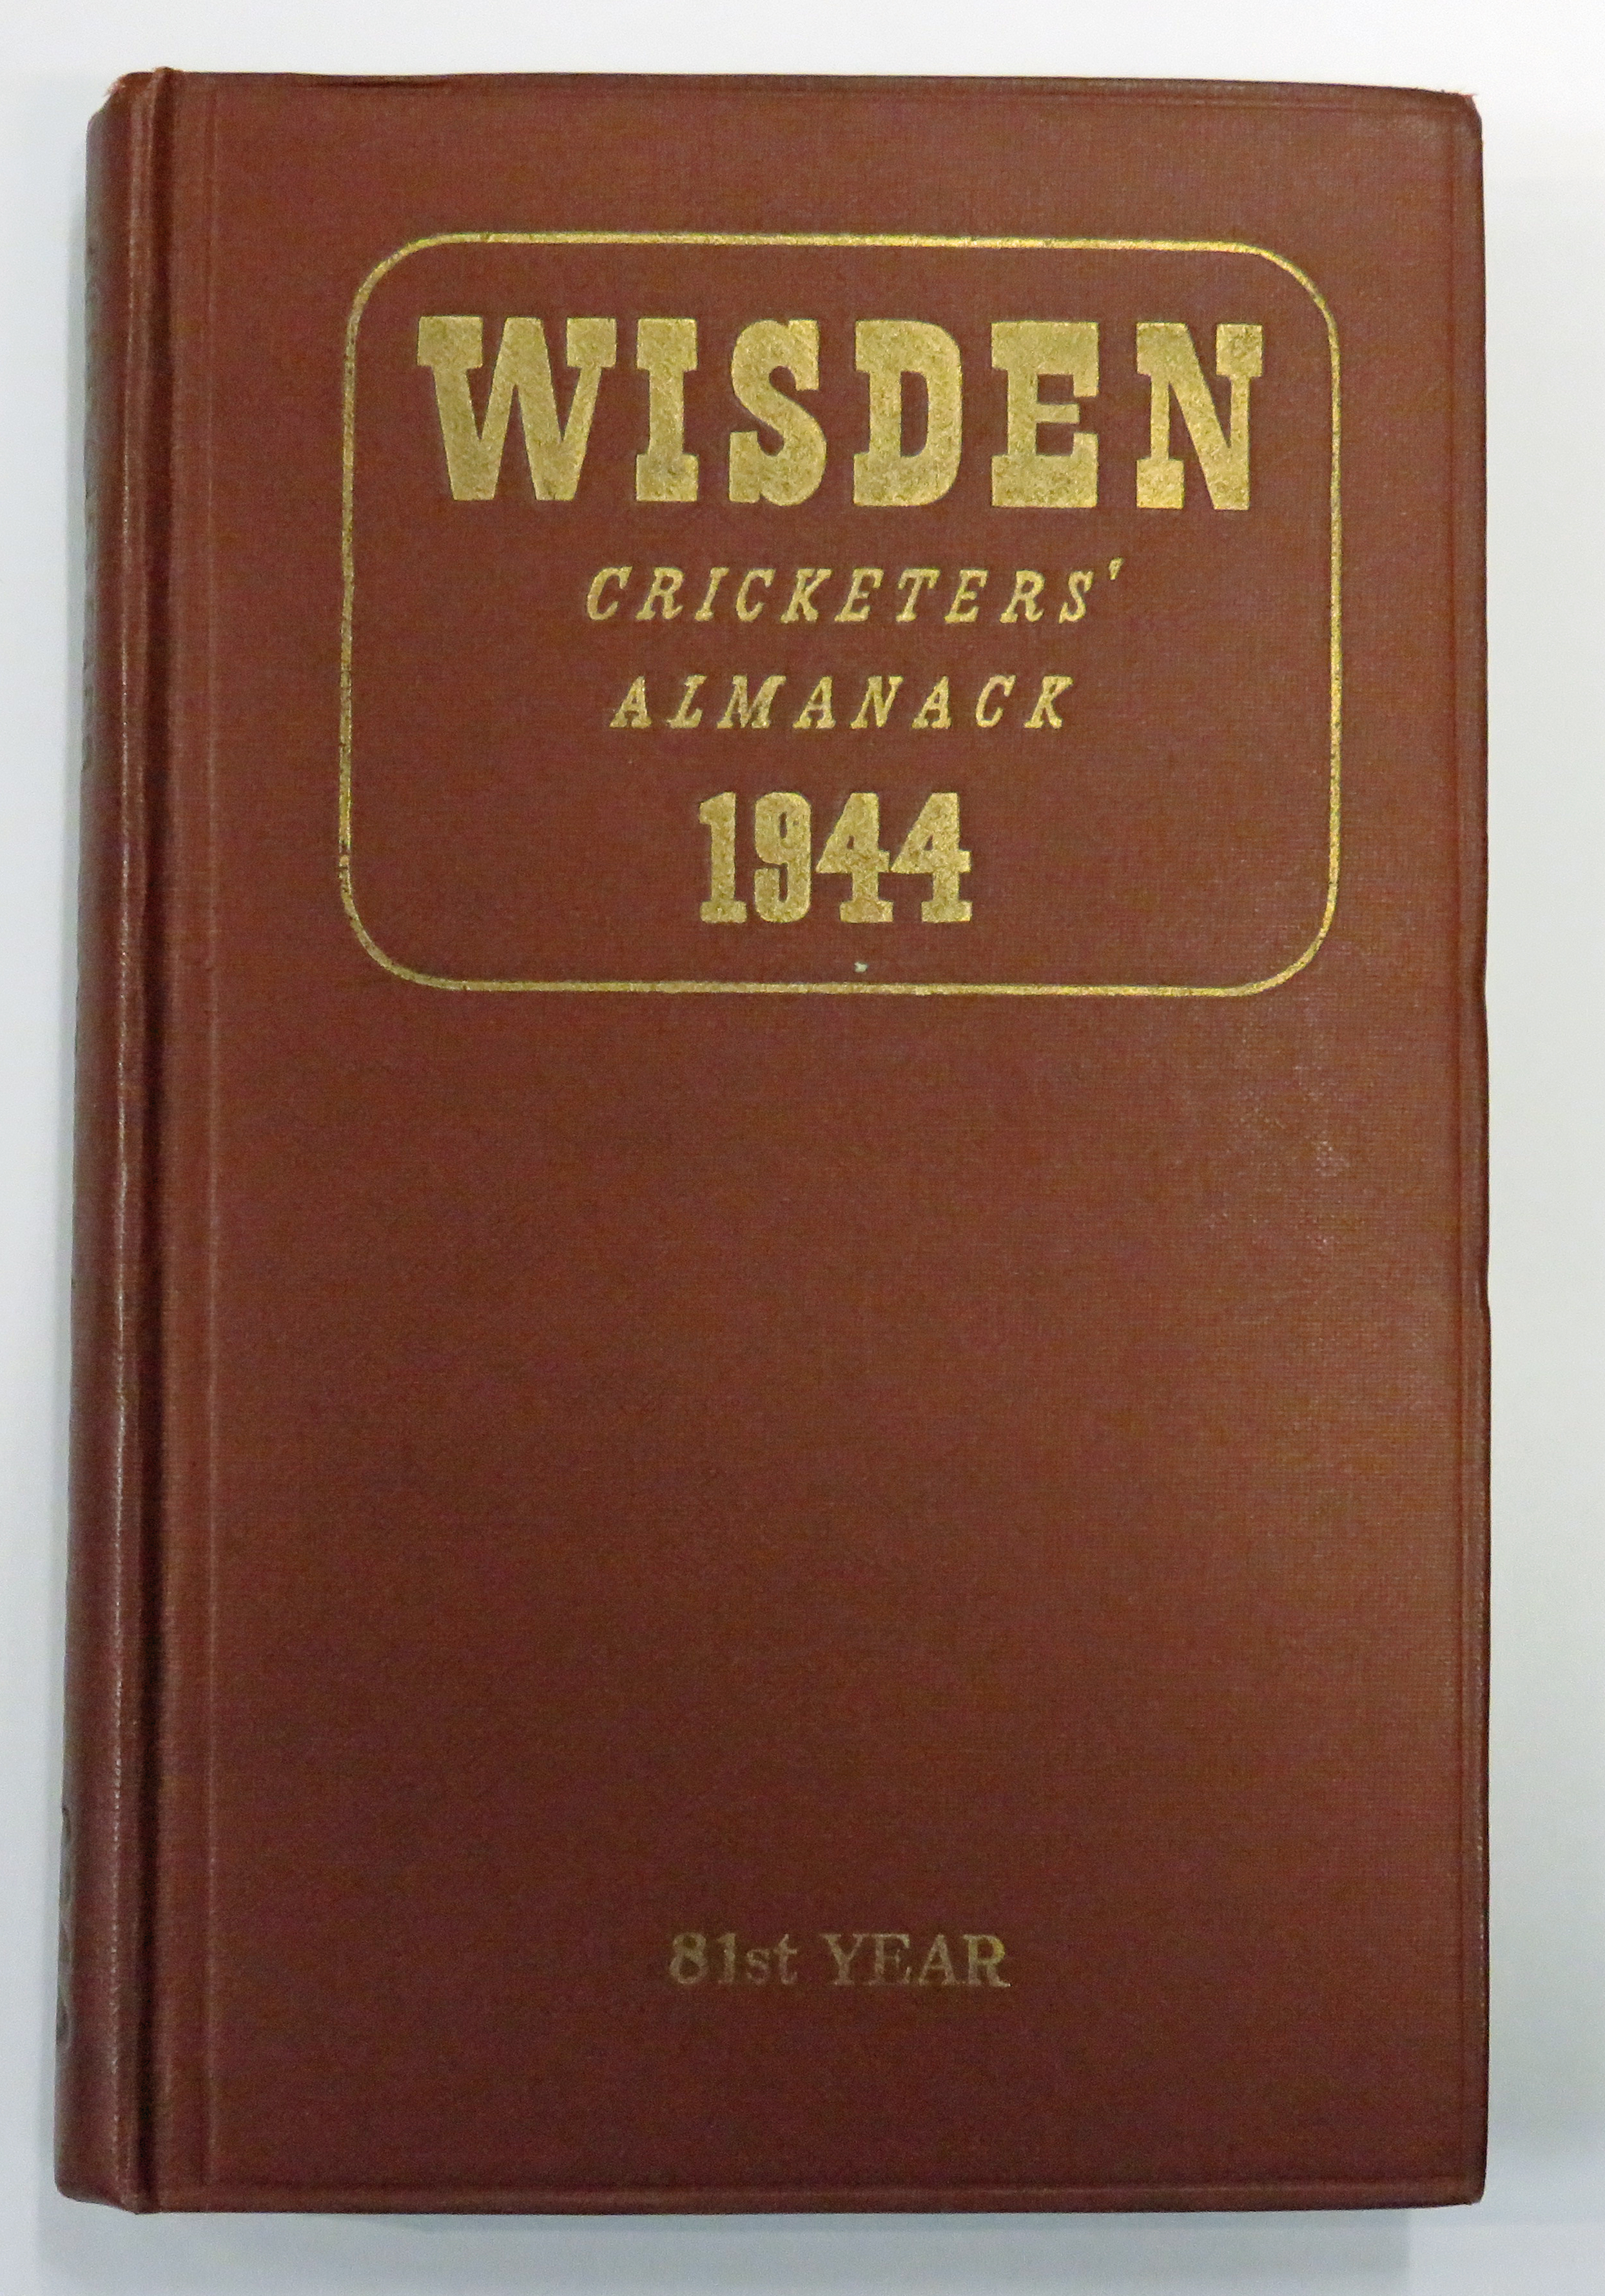 Wisden Cricketers' Almanack 1944